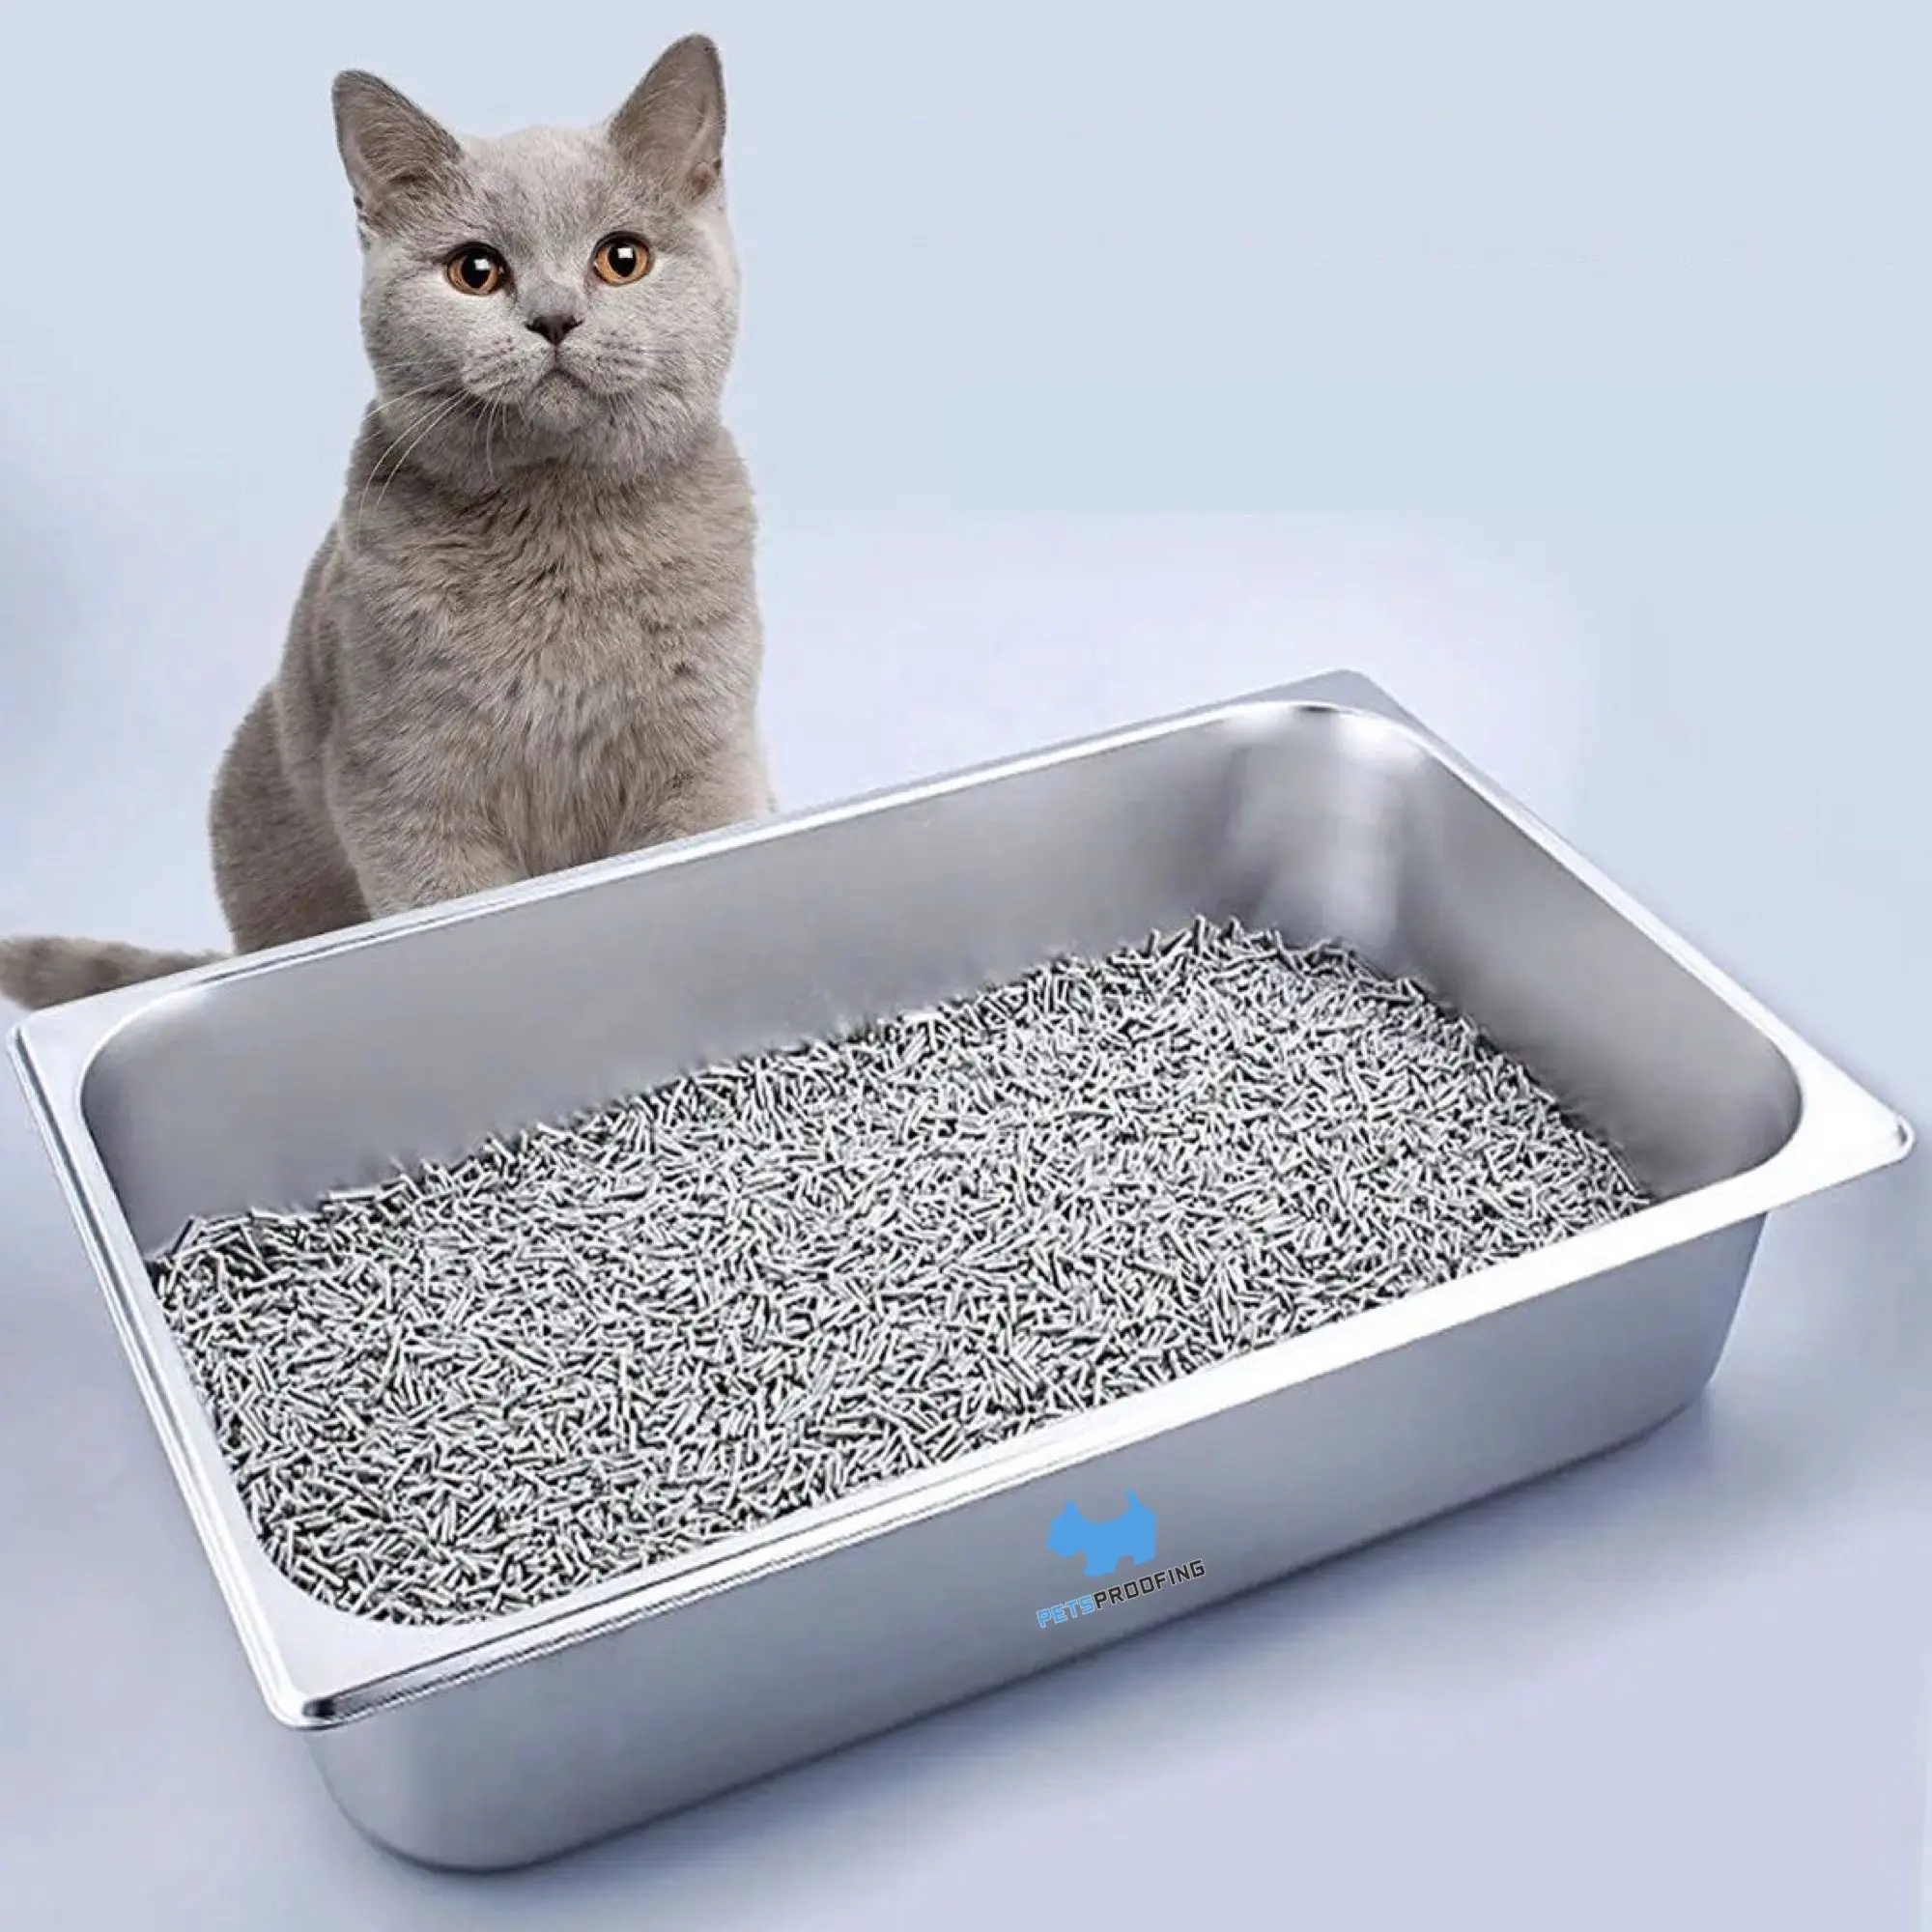 กล่องทรายโลหะสำหรับใส่ทรายแมวถาดทรายมัลติฟังก์ชันทนทานอุปกรณ์สัตว์เลี้ยงใช้ซ้ำได้ถาดทรายแมว